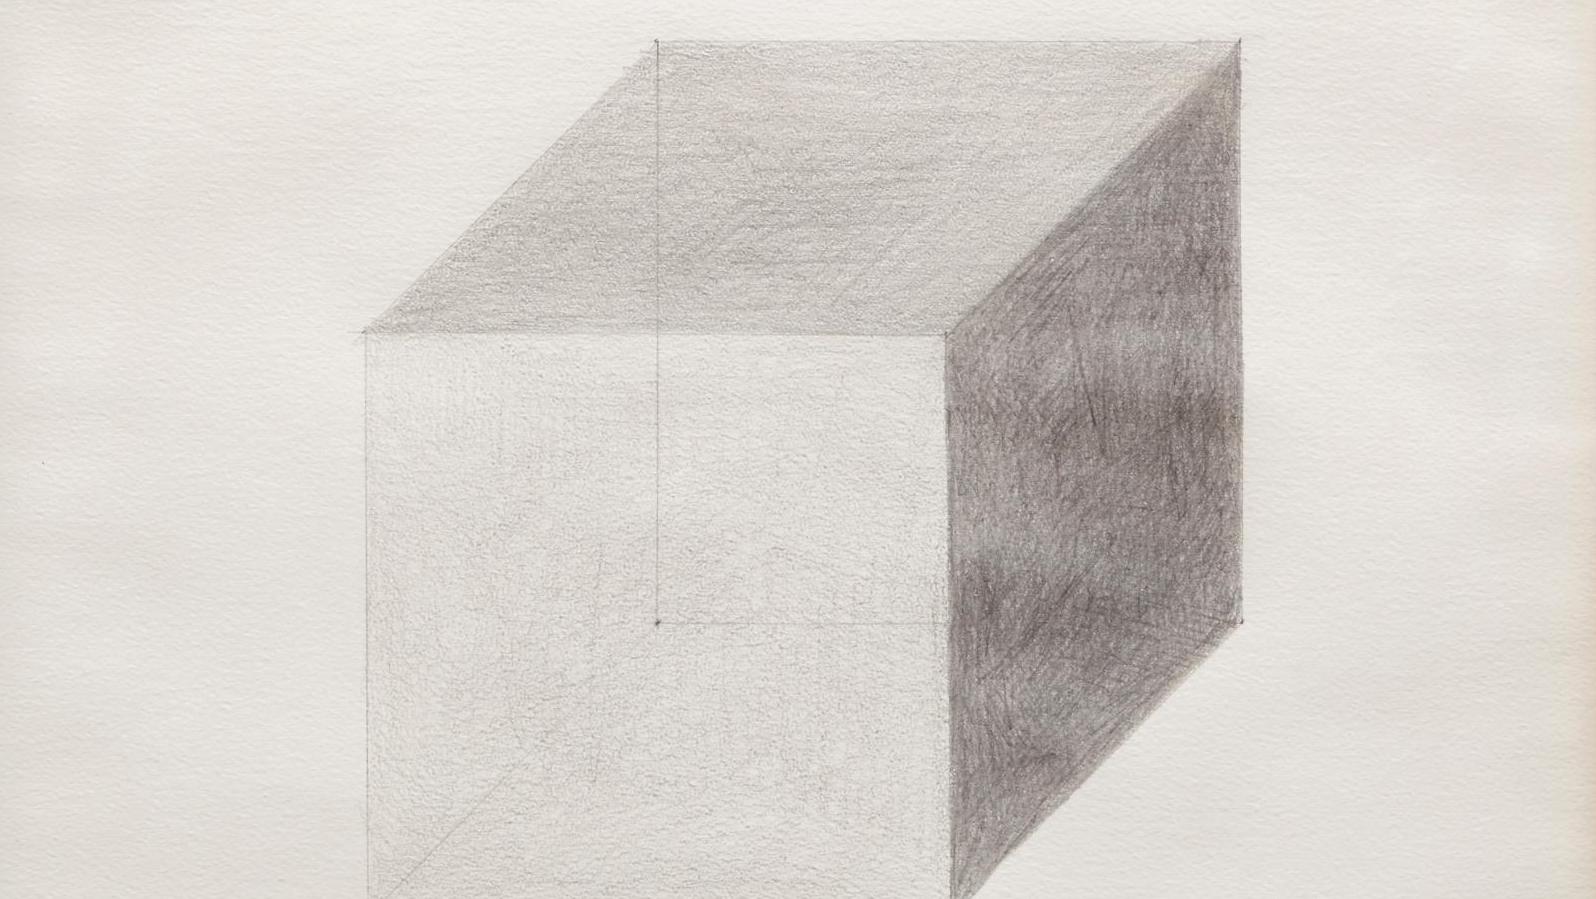 Sol Lewitt (1928-2007), Cube en perspective, 1982, dessin à la mine de plomb, 55 x 55 cm.... L’art minimaliste de Sol lewitt